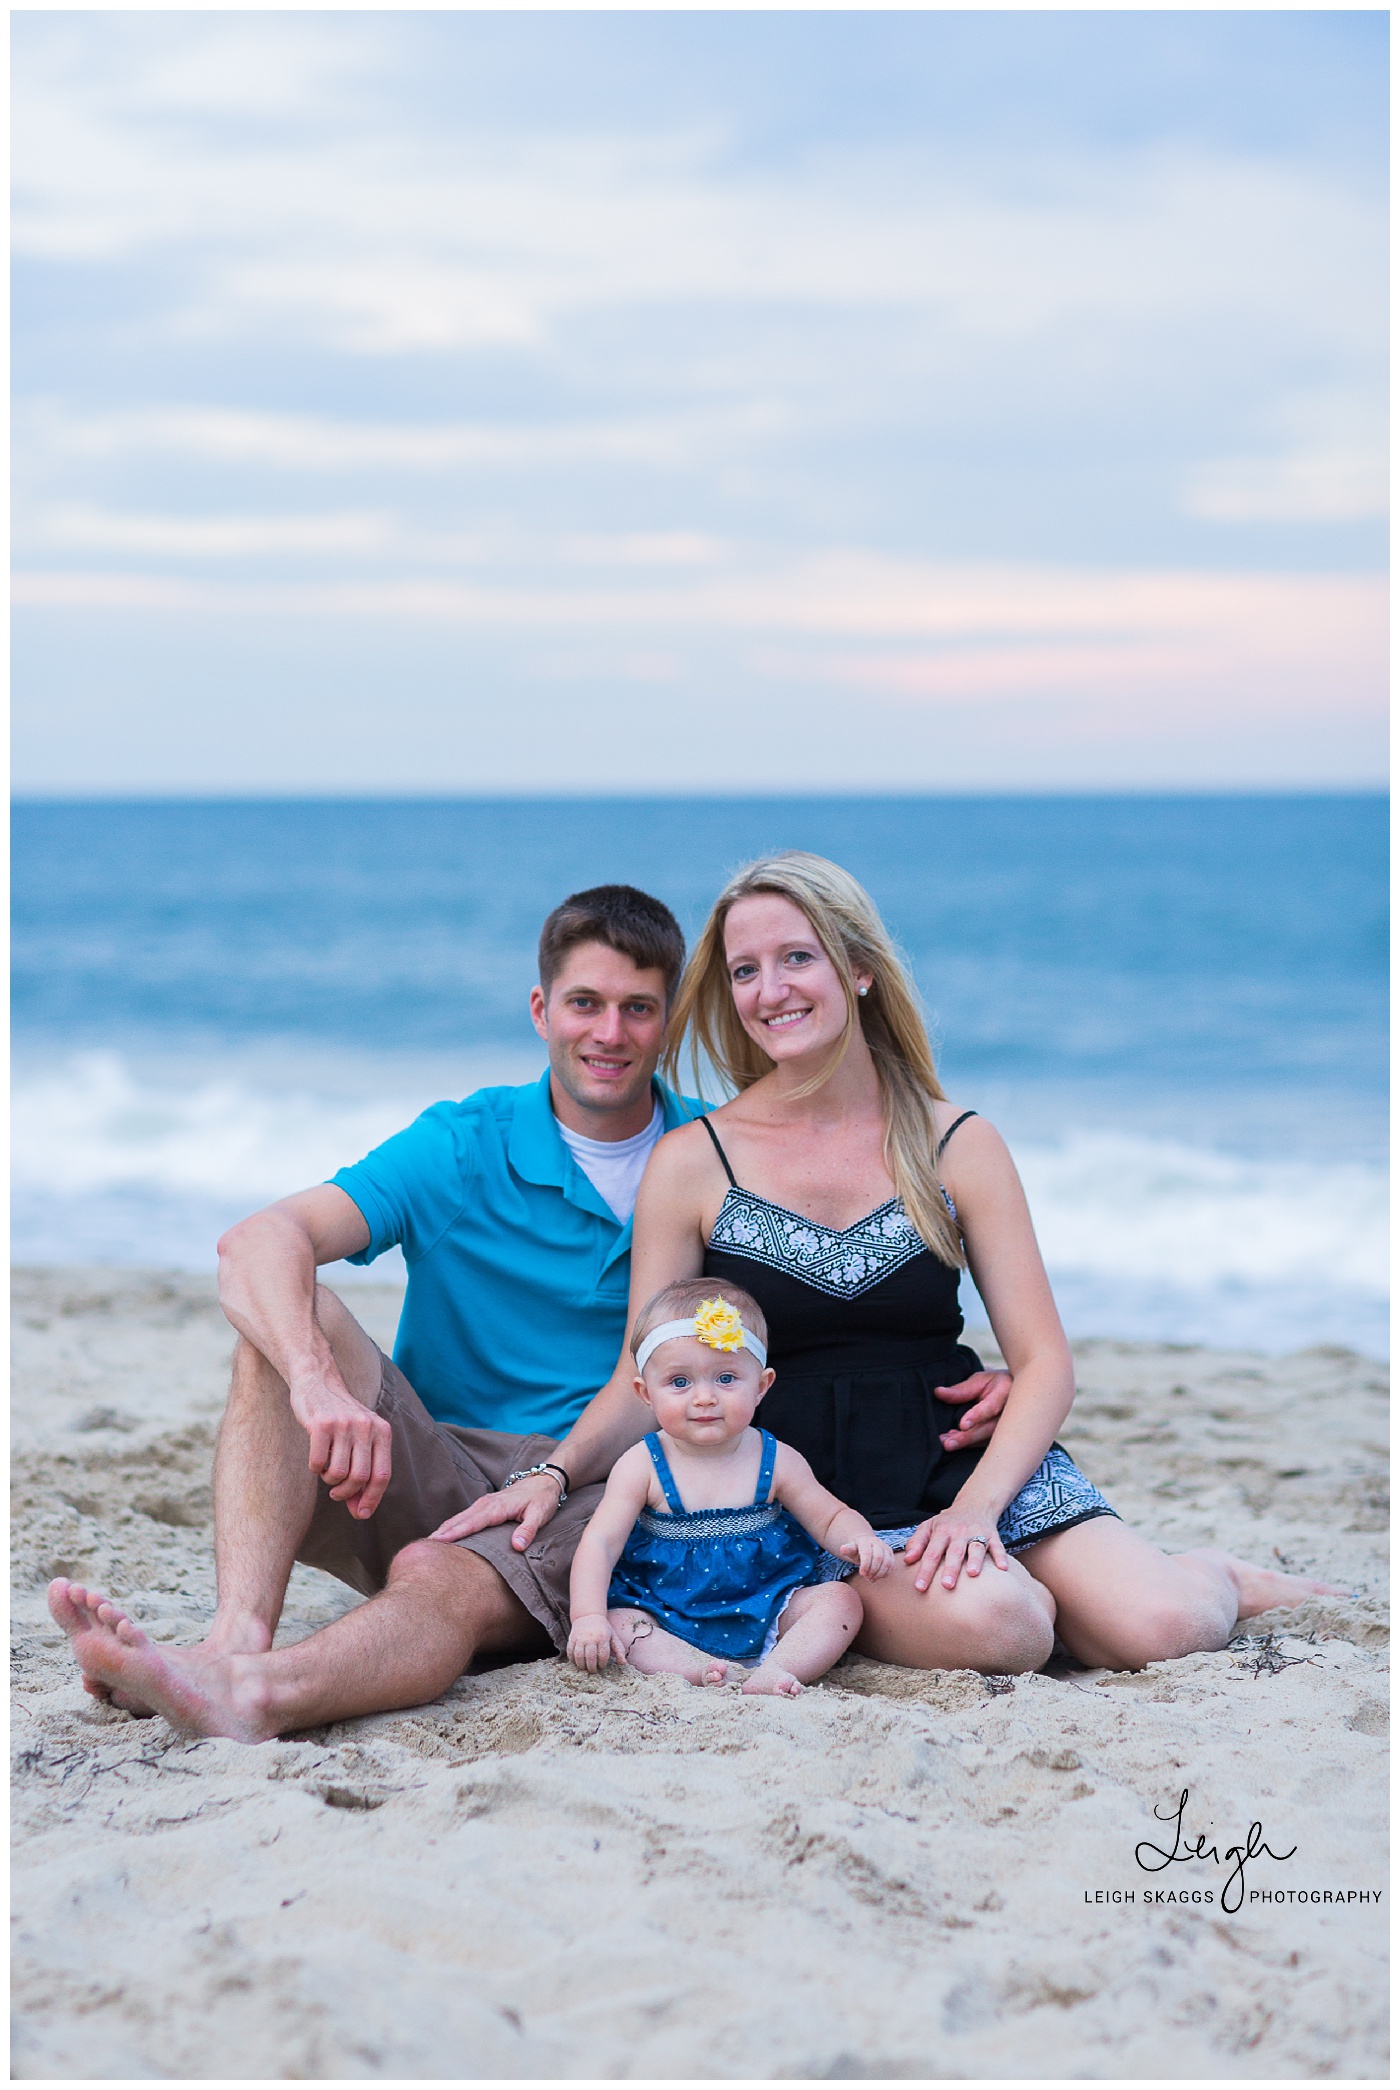 Jamie, Alex & Kinsley | Family Beach Session